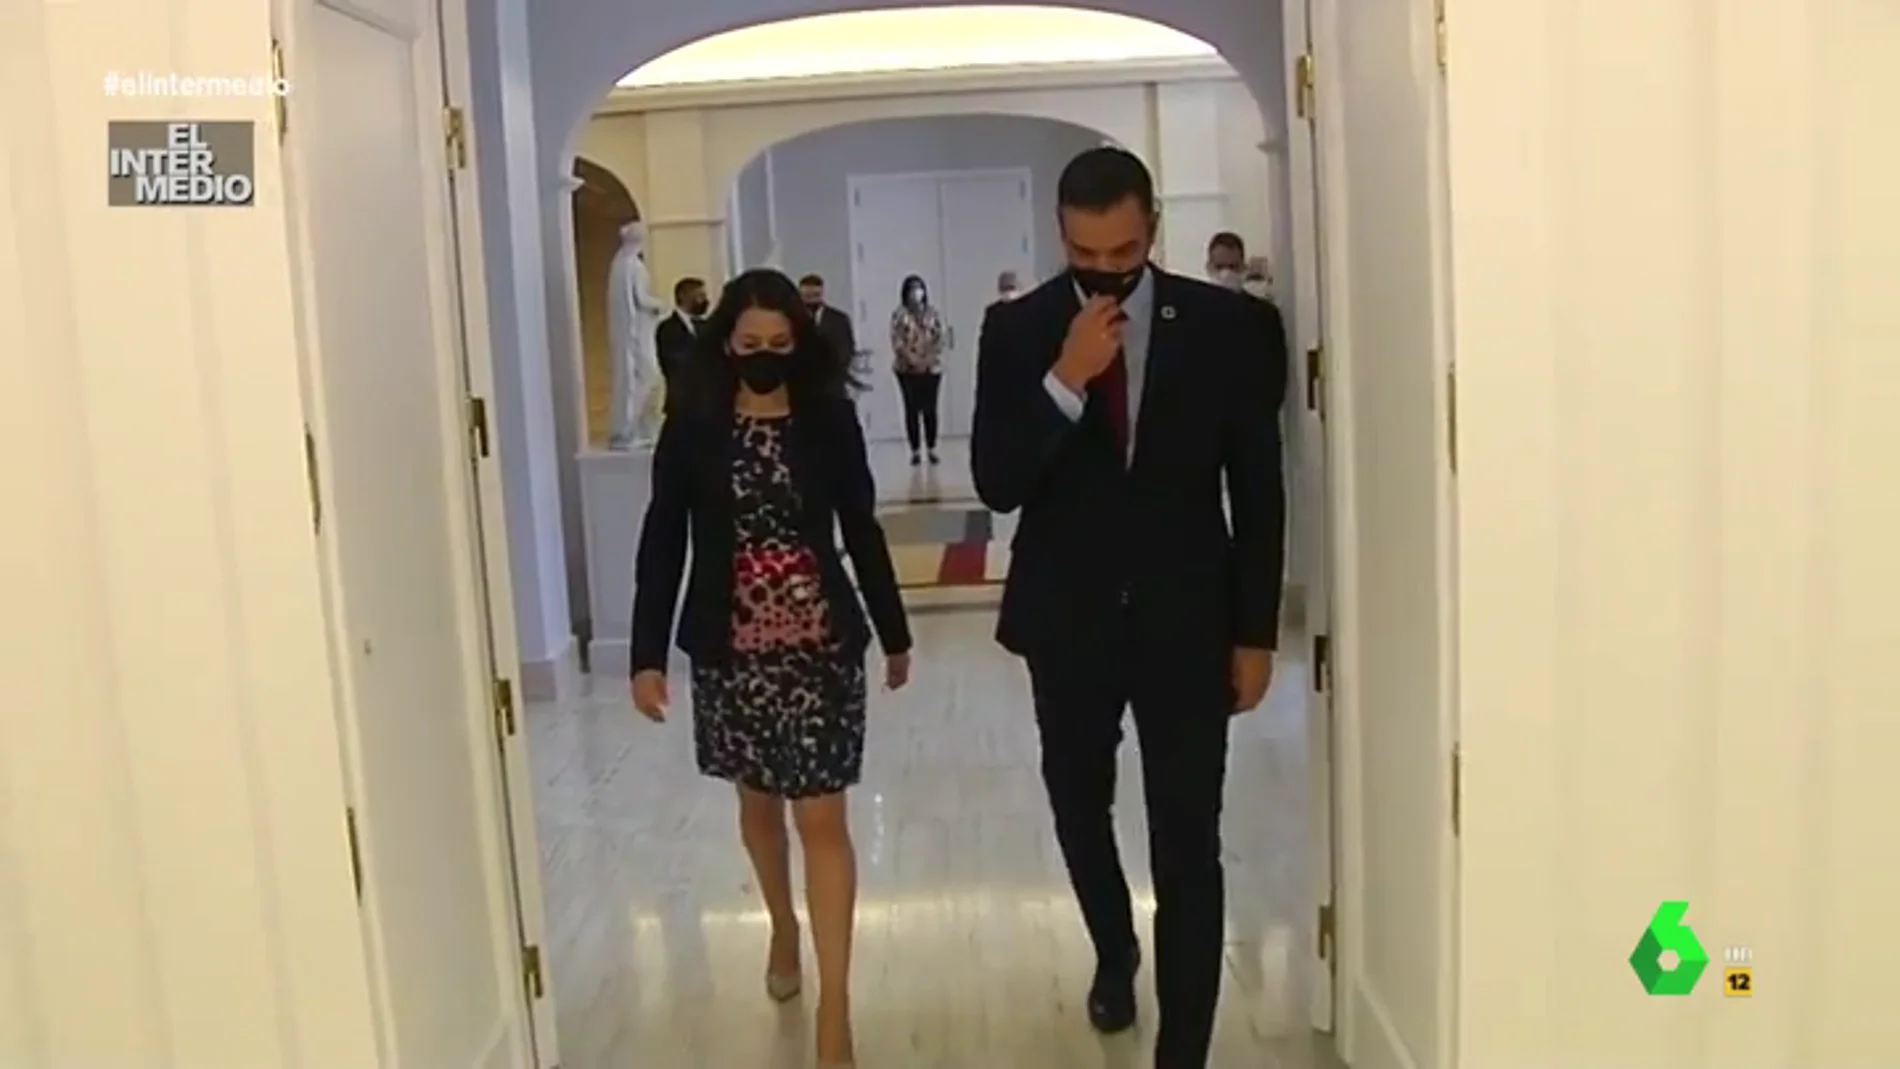 Vídeo manipulado - La íntima confesión de Sánchez a Arrimadas sobre la Moncloa